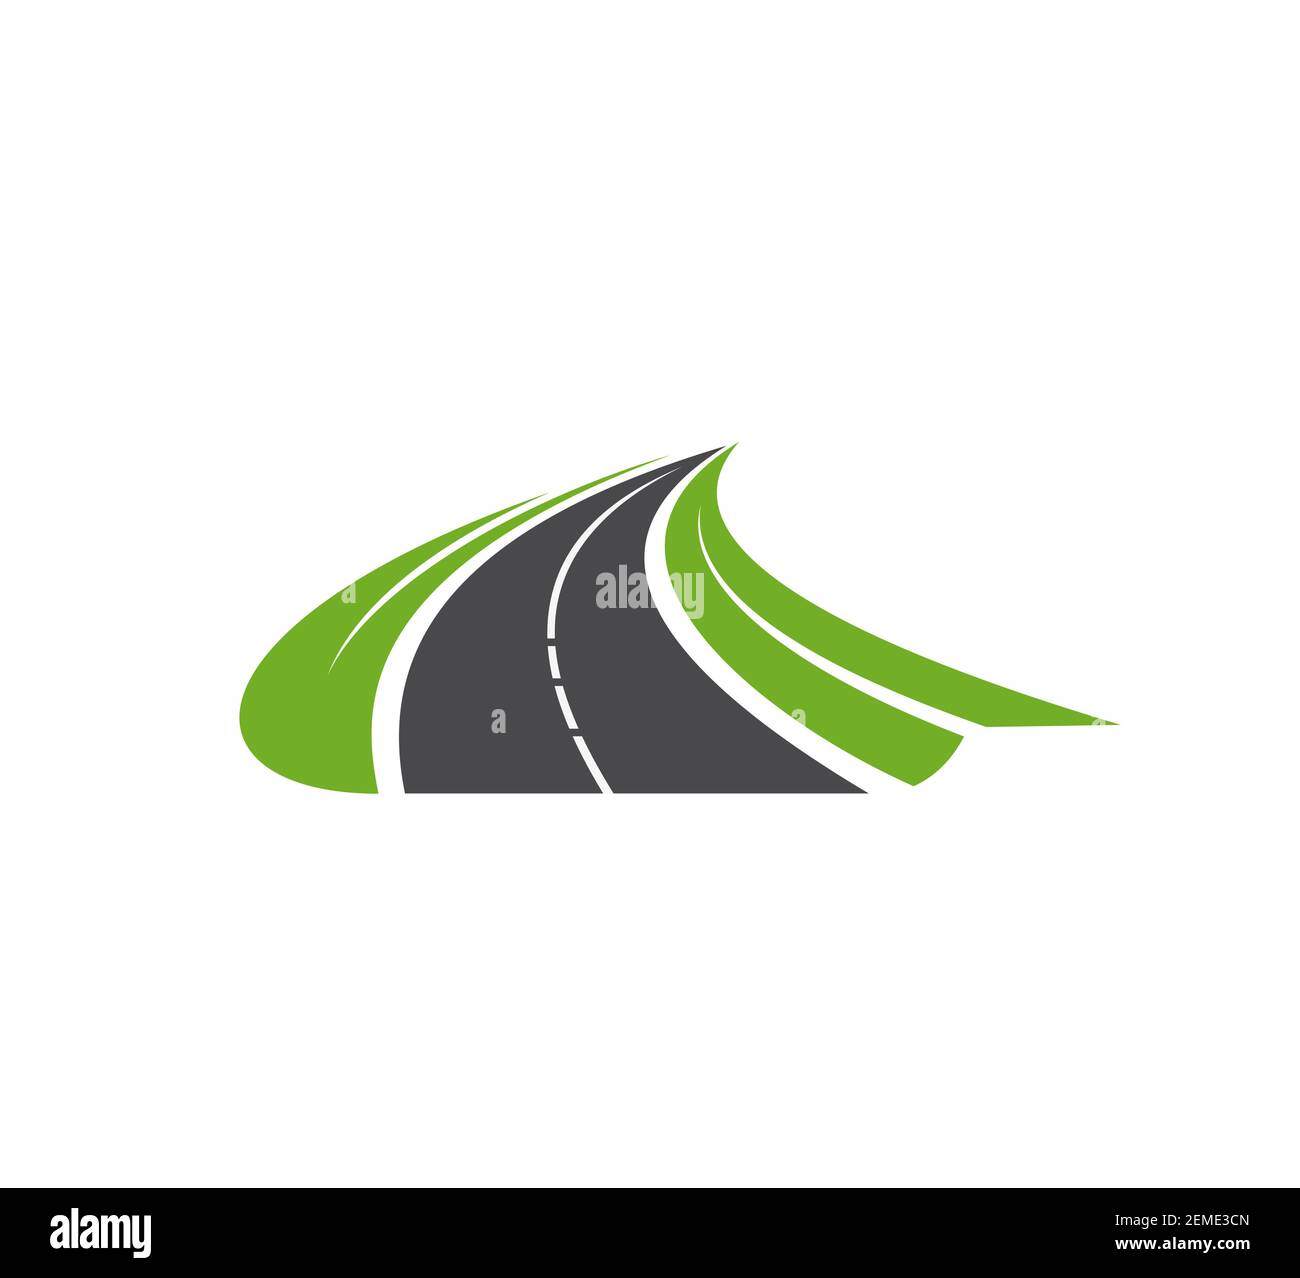 Symbol für Straße, Pfad, Autobahn. Reise- oder Transportservice, Navigationssymbol, Einfahrt-Element. Asphaltierte Straße durch grüne Felder mit Stock Vektor